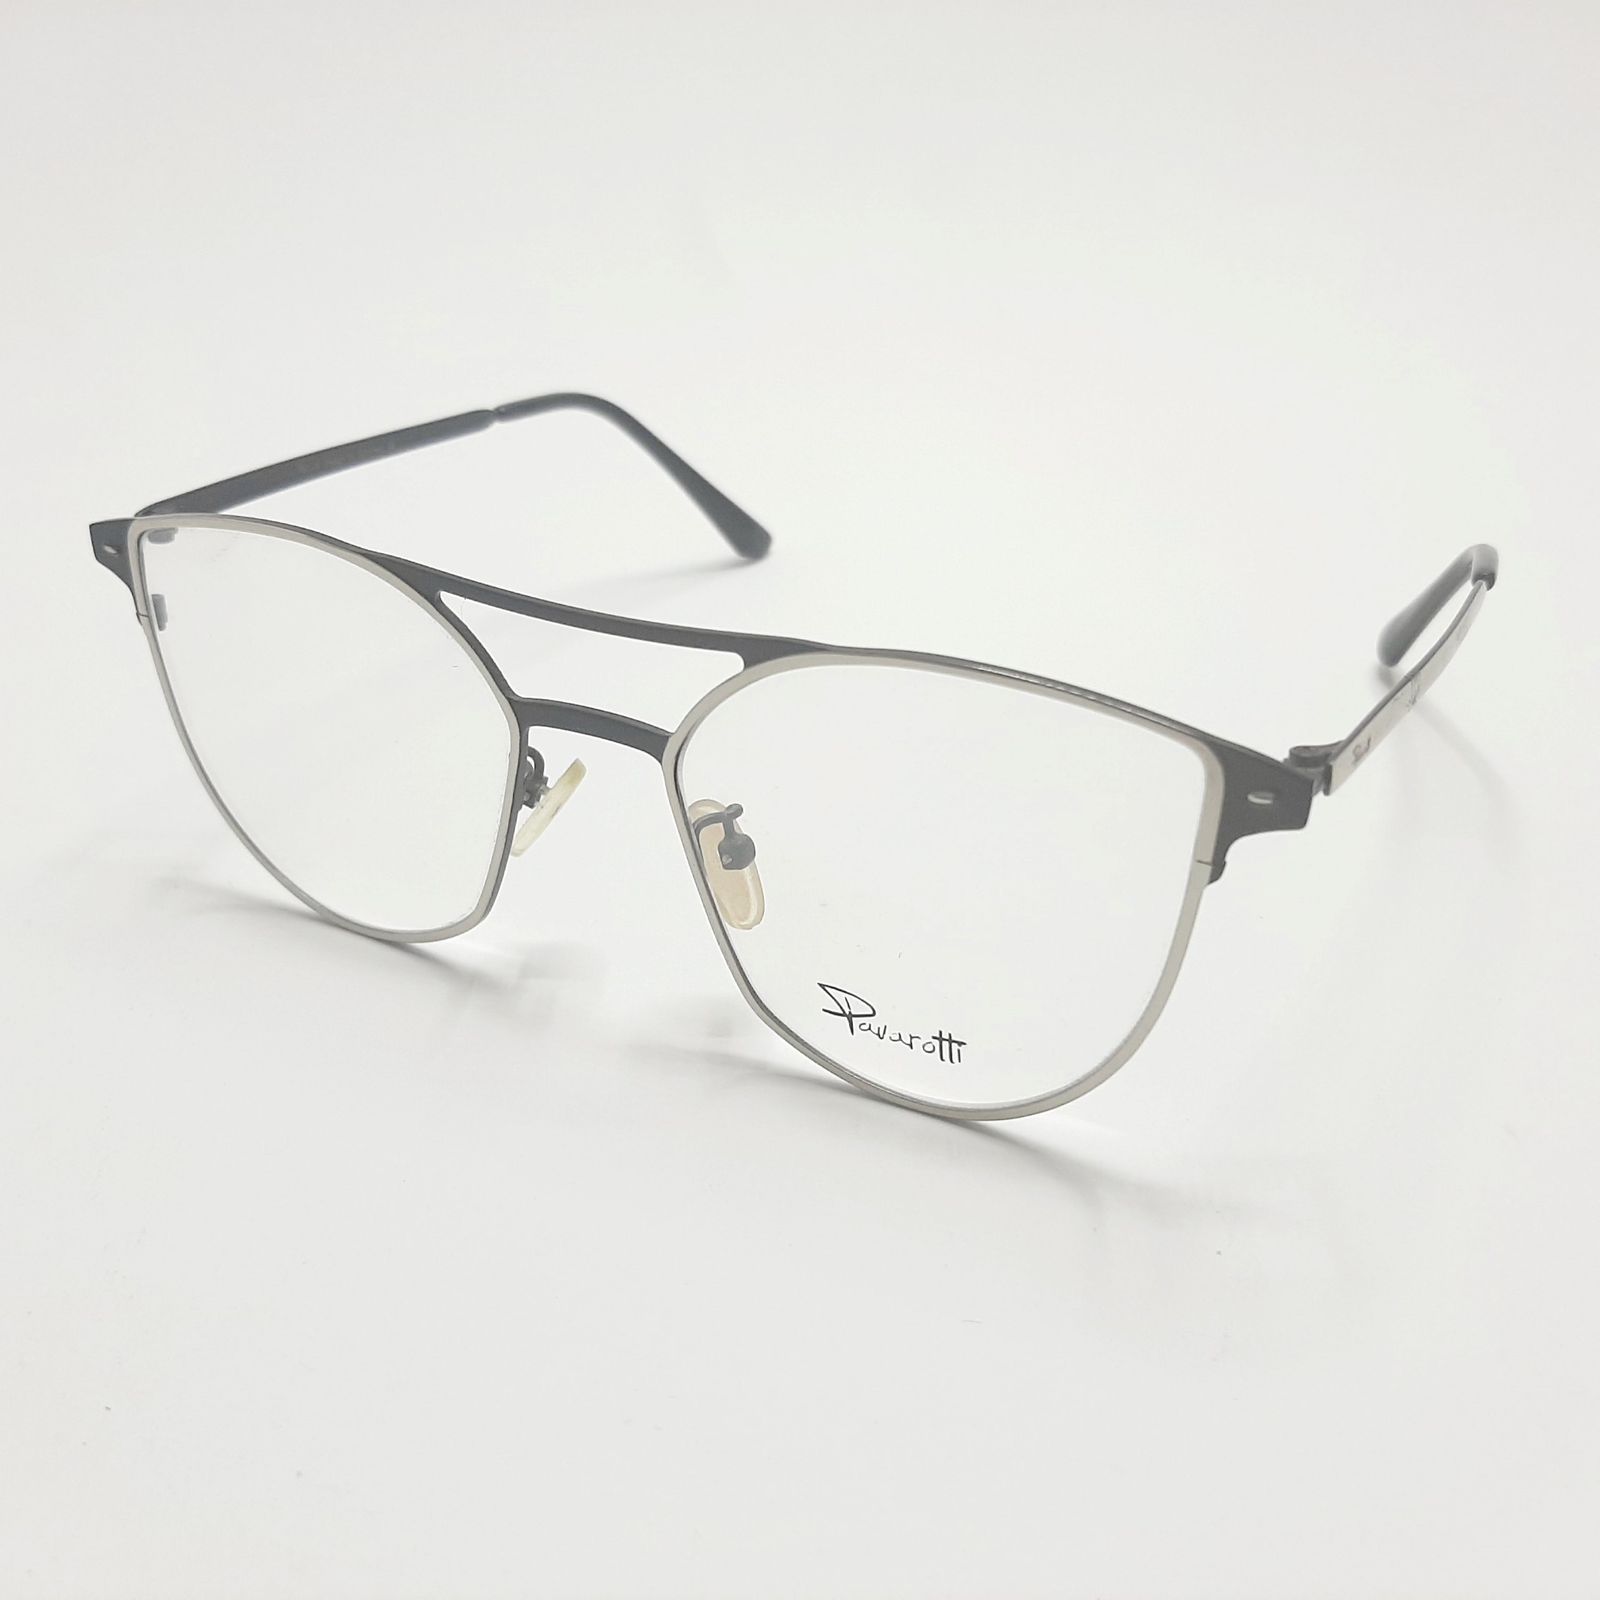 فریم عینک طبی پاواروتی مدل P82001c4 -  - 4